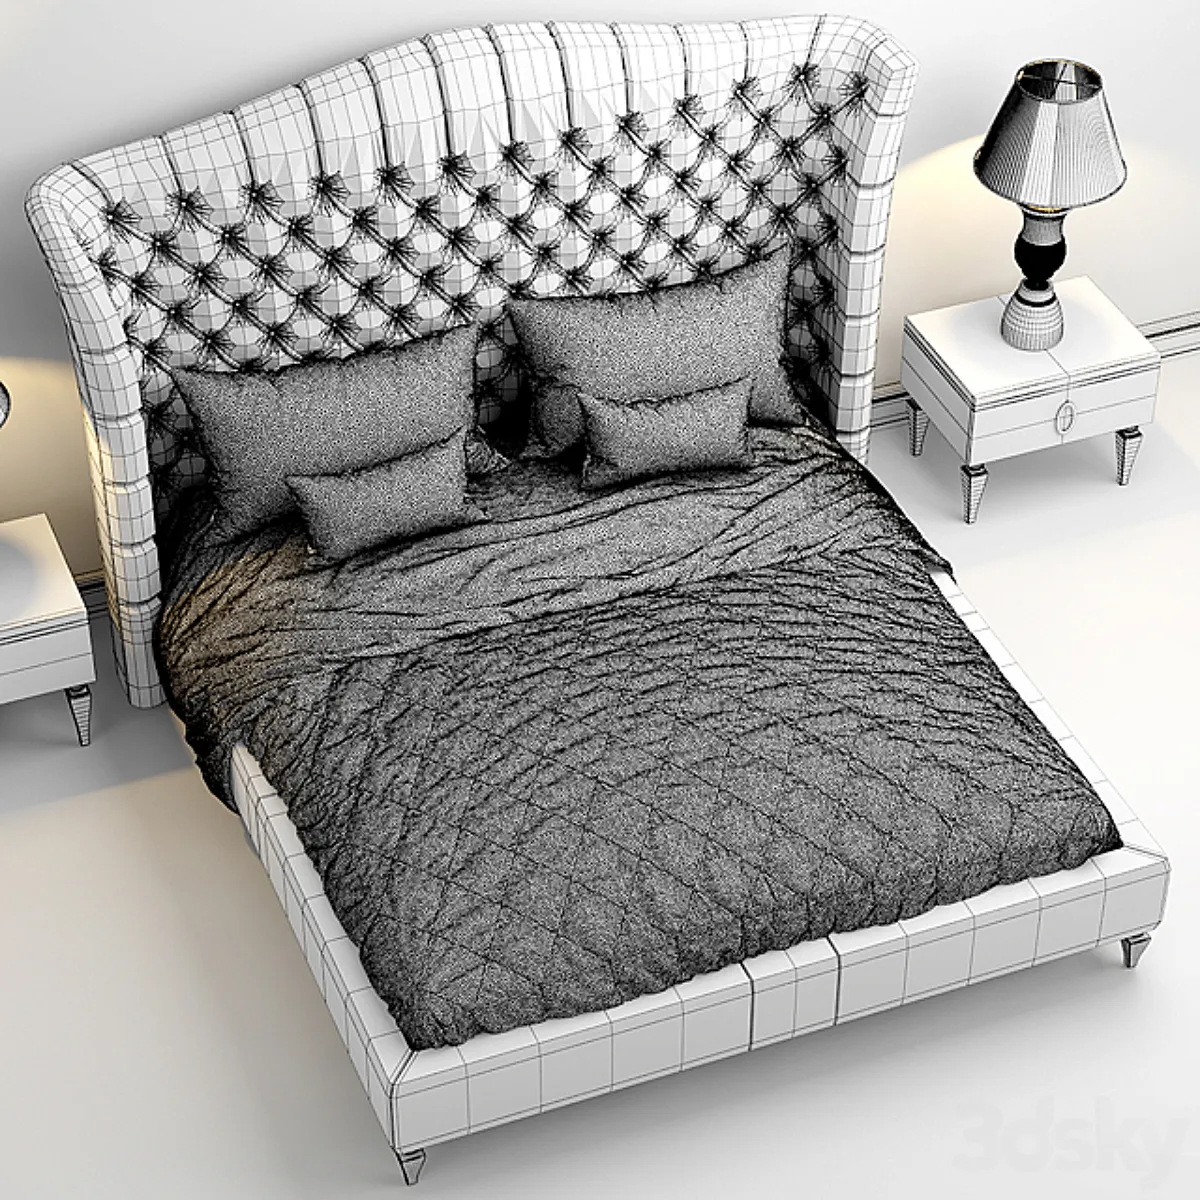 مدل سه بعدی تخت خواب کلاسیک 26 - 6